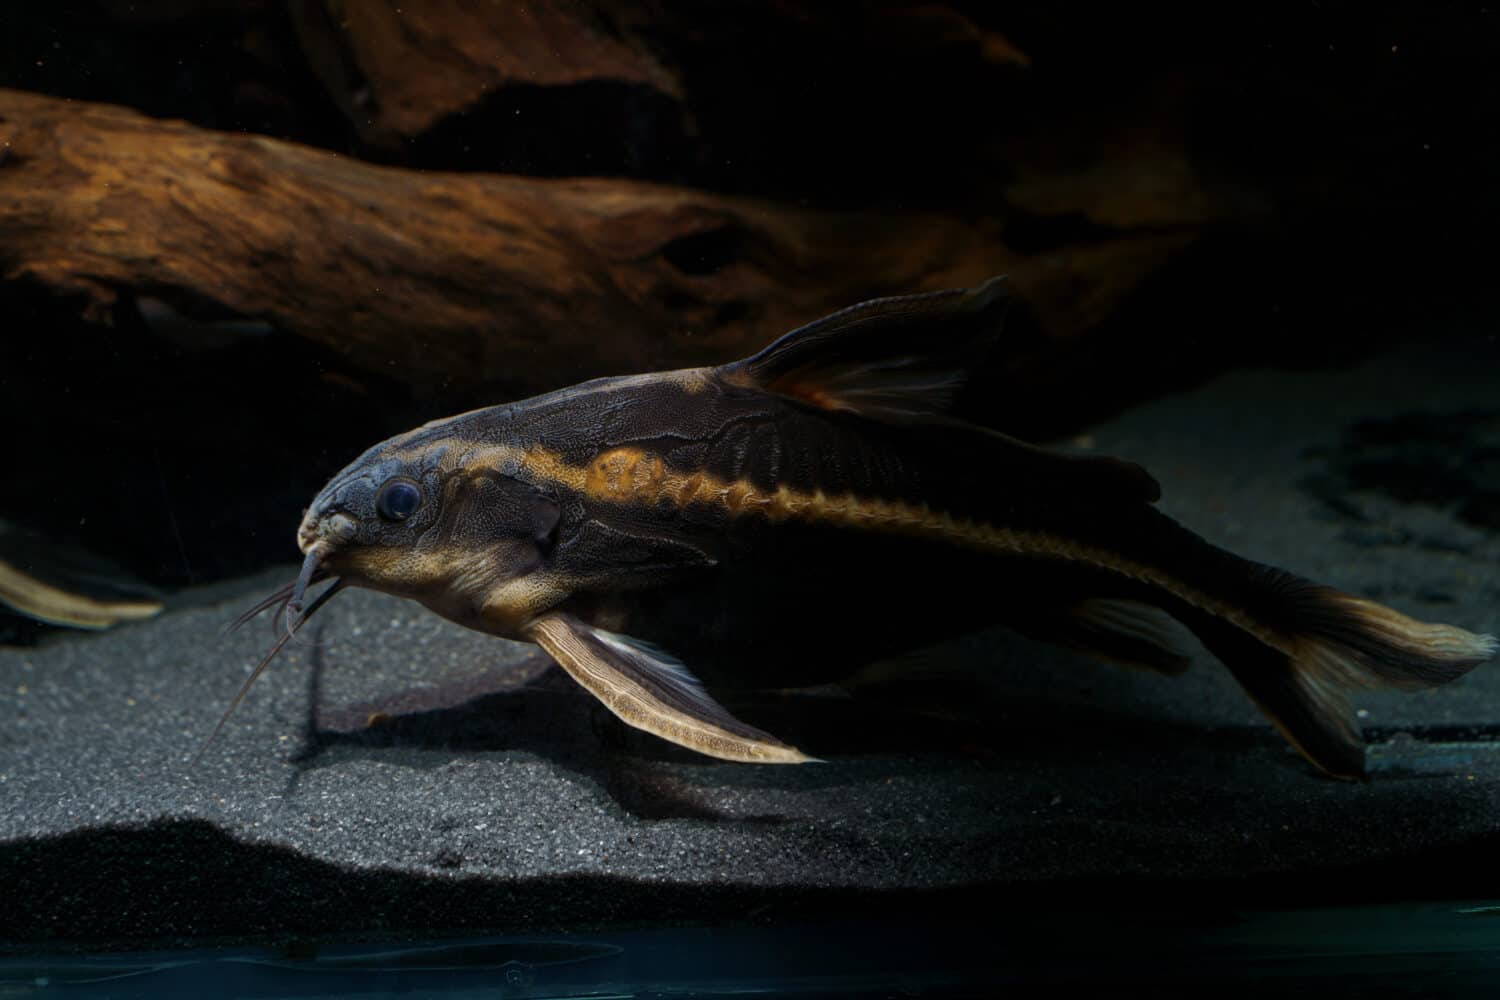 Striped Raphael catfish (Platydoras armatulus) swimming in the bottom of aquarium